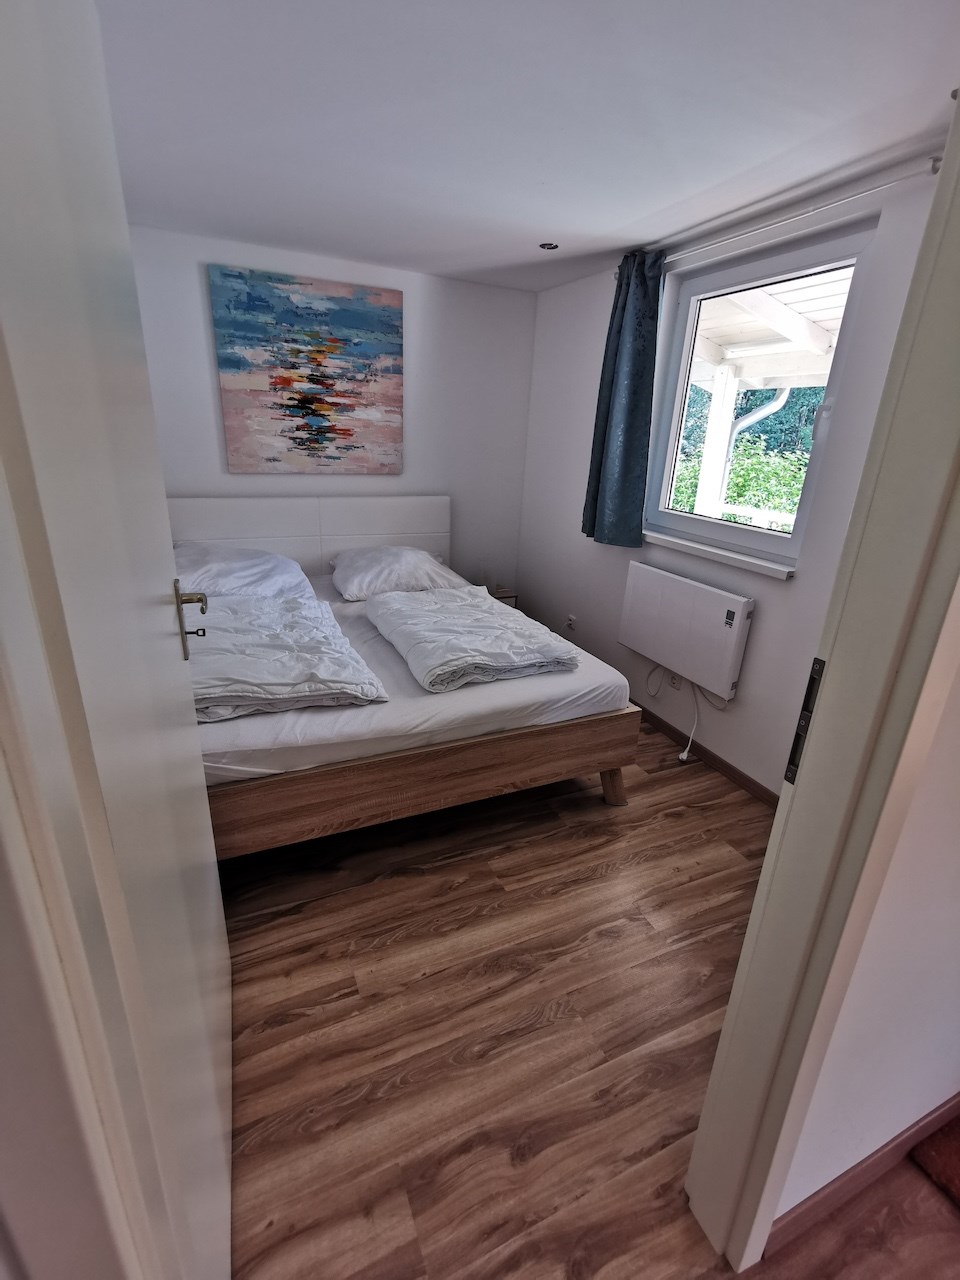 Glampingunterkunft: Typisches Schlafzimmer (in Typ 4 2x) - Bungalows ostseequelle.camp